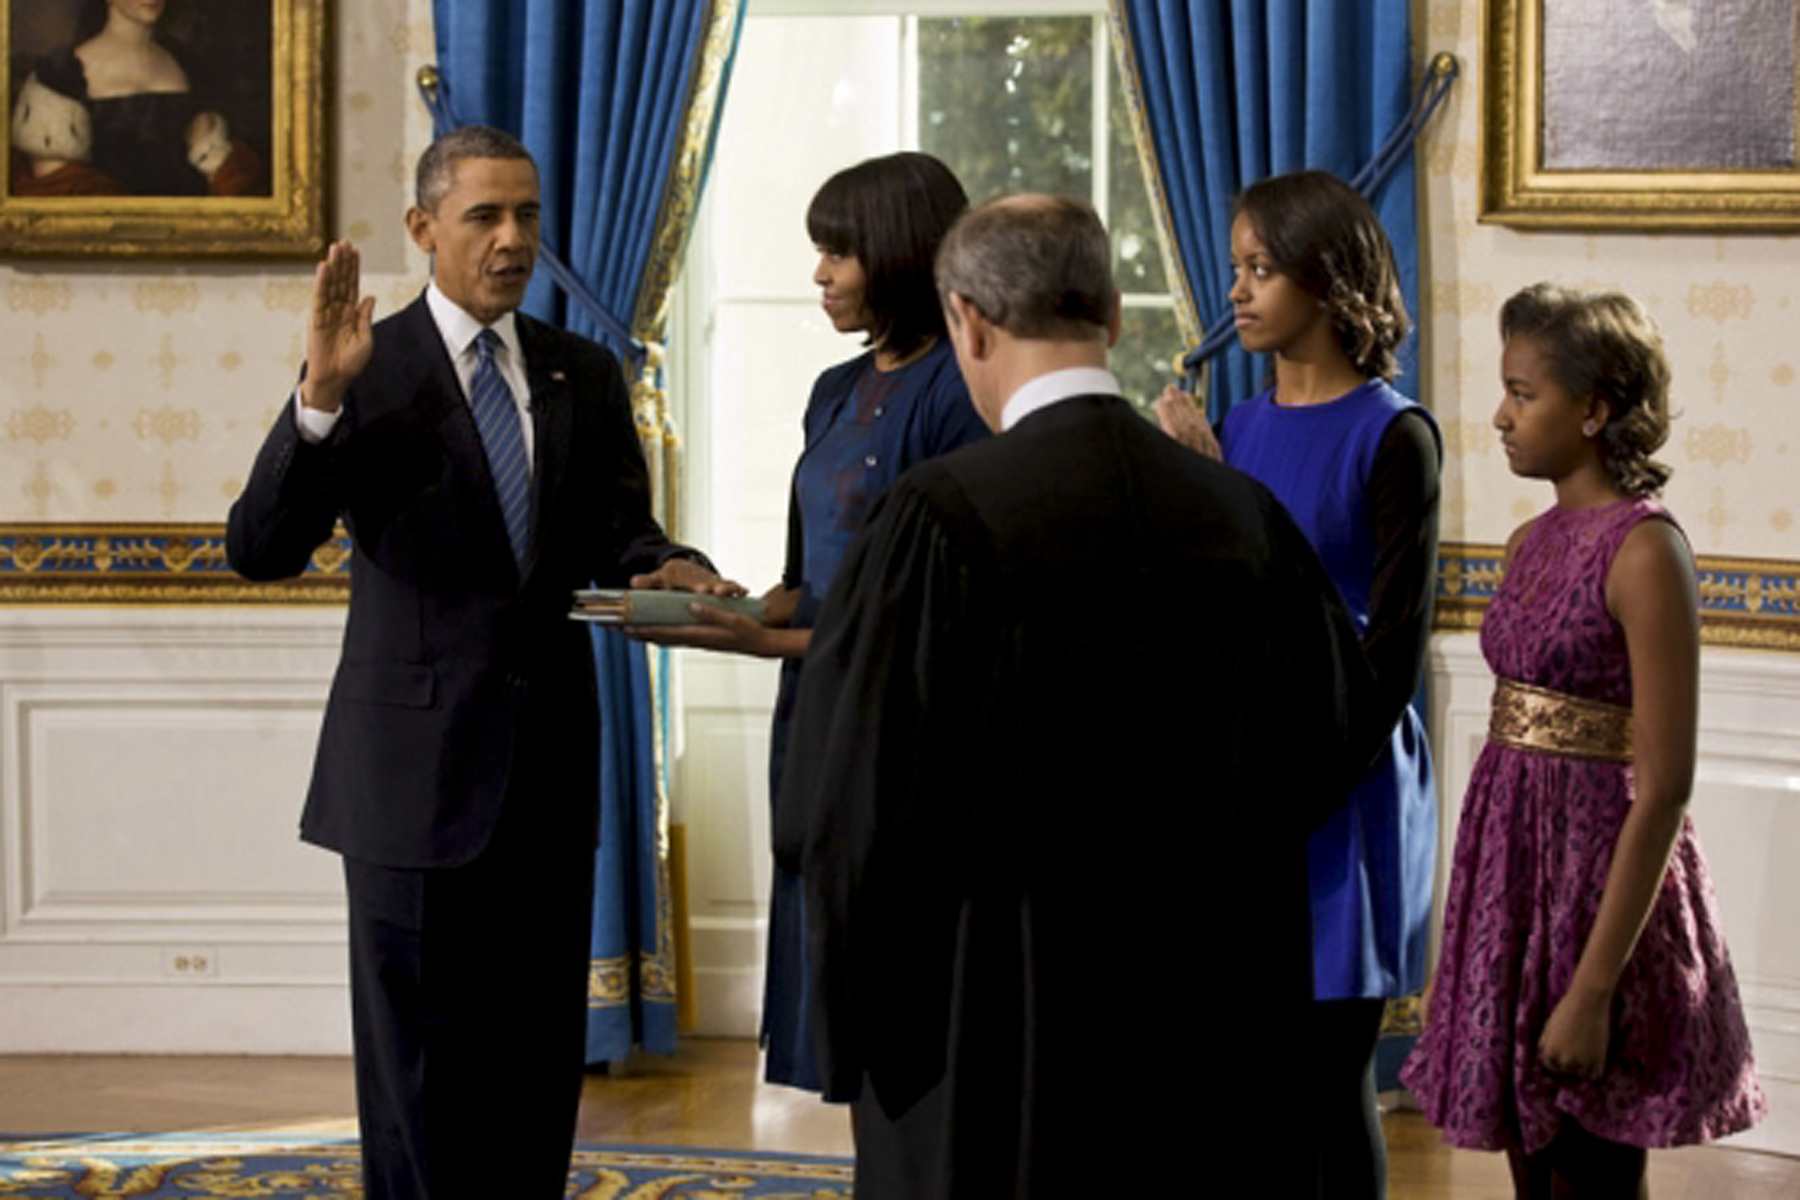 Obama takes oath